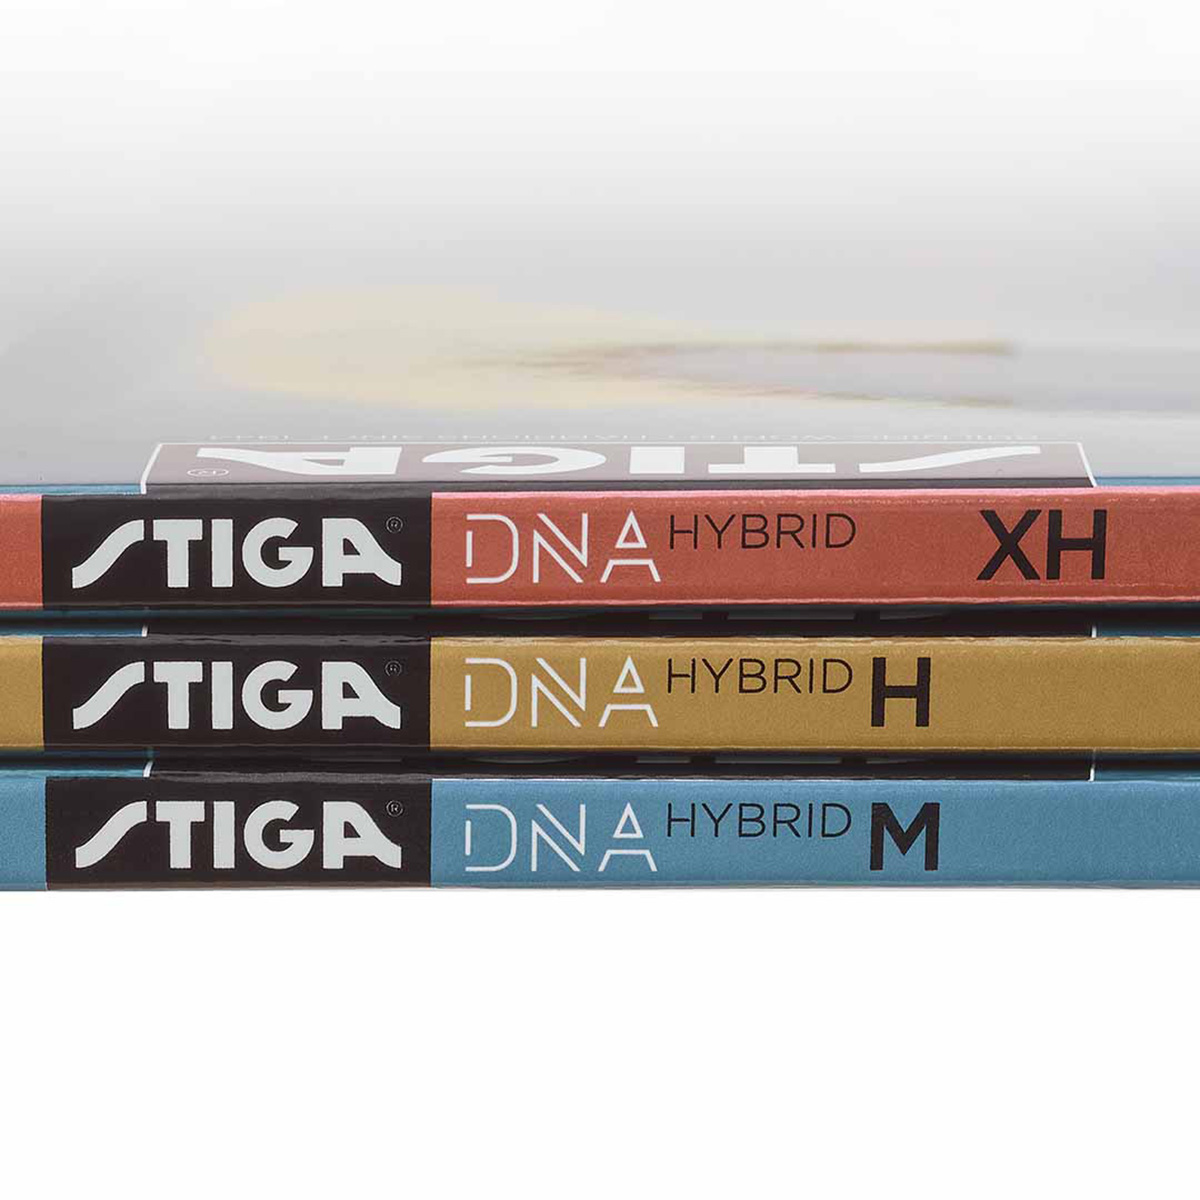 STIGA Belag DNA Hybrid XH rot 2,2 mm